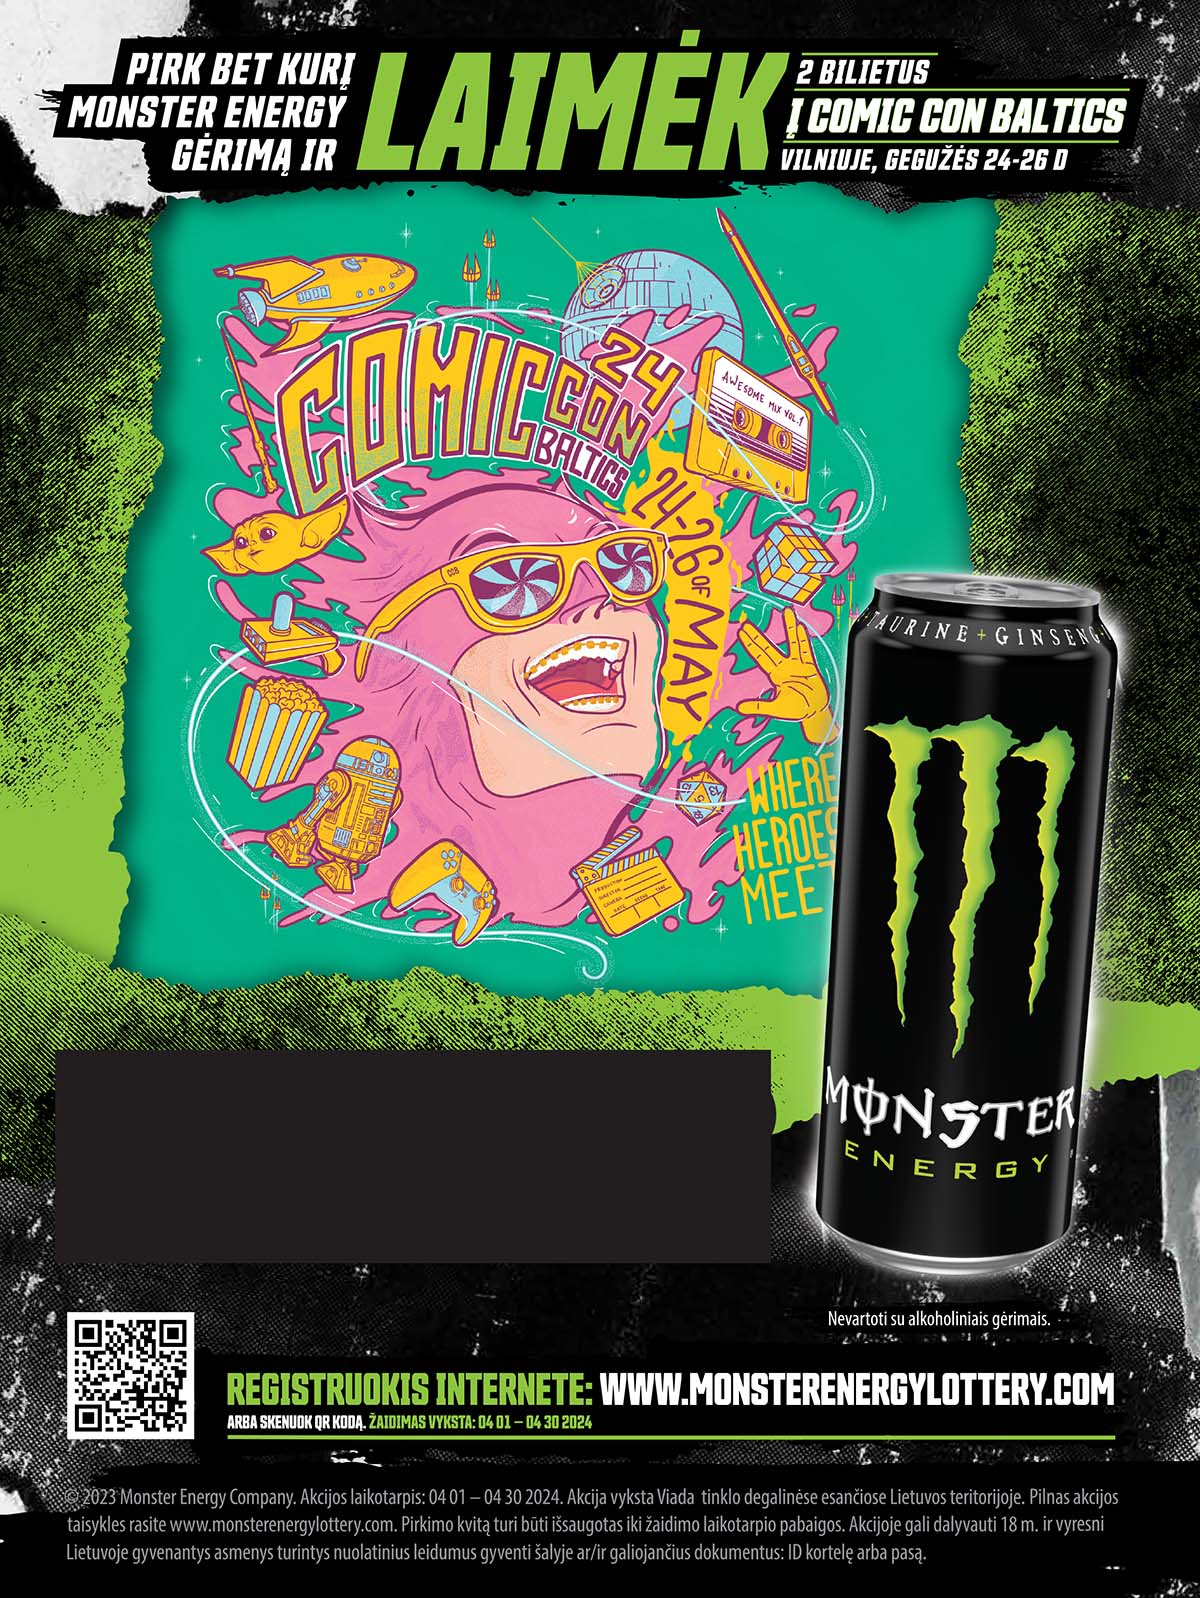 Pirk bet kurį Monster Energy gėrimą ir laimėk 2 bilietus į Comic Con Baltics! Vilniuje, gegužės 24-26D